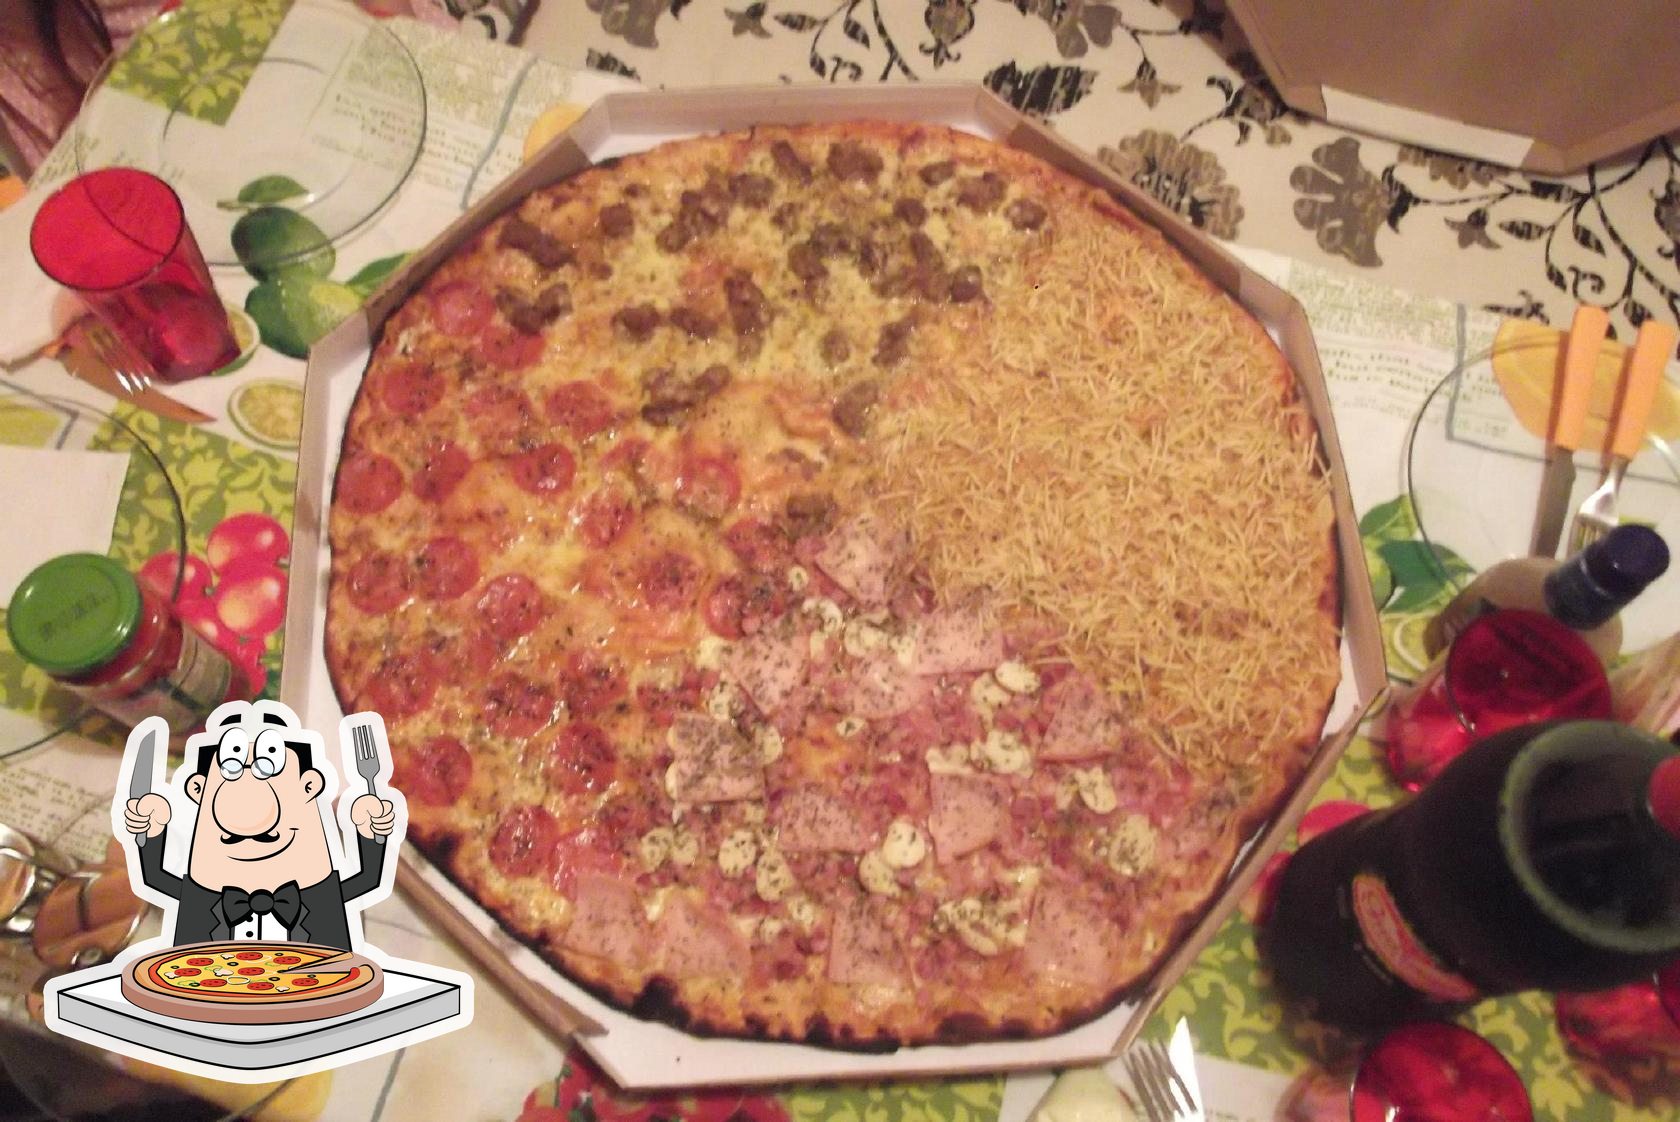 Super Pizza Gigante Itajai - Boa Noite Clientes e Amigos Que tal pedir  uma deliciosa pizza no conforto do seu lar, já estamos atendendo pelos  fones; 33469199 ou 988678841 whats